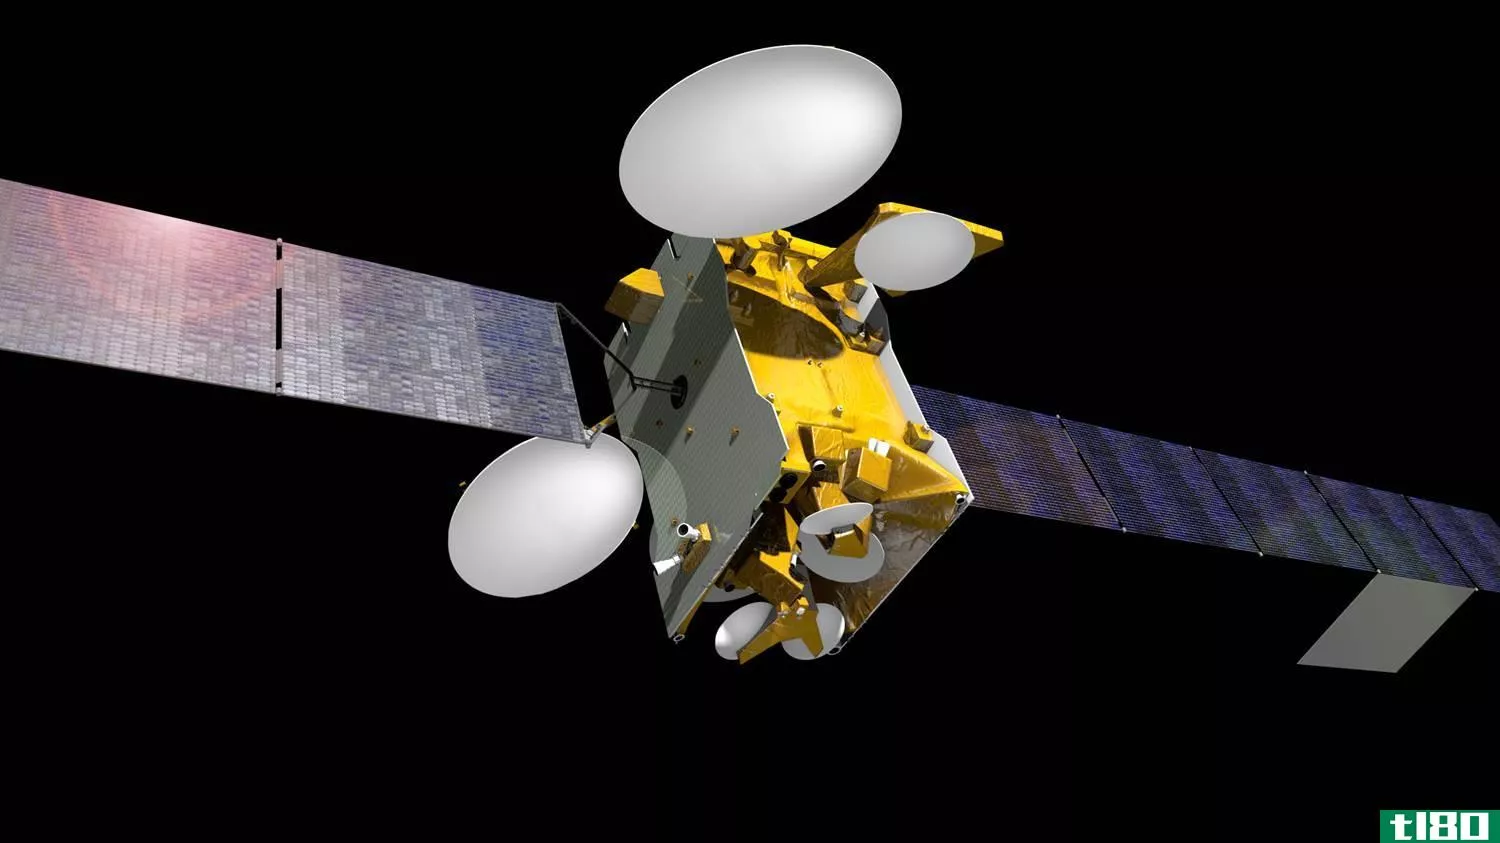 卫星运营商ses将是第一个用二手spacex火箭发射货物的公司